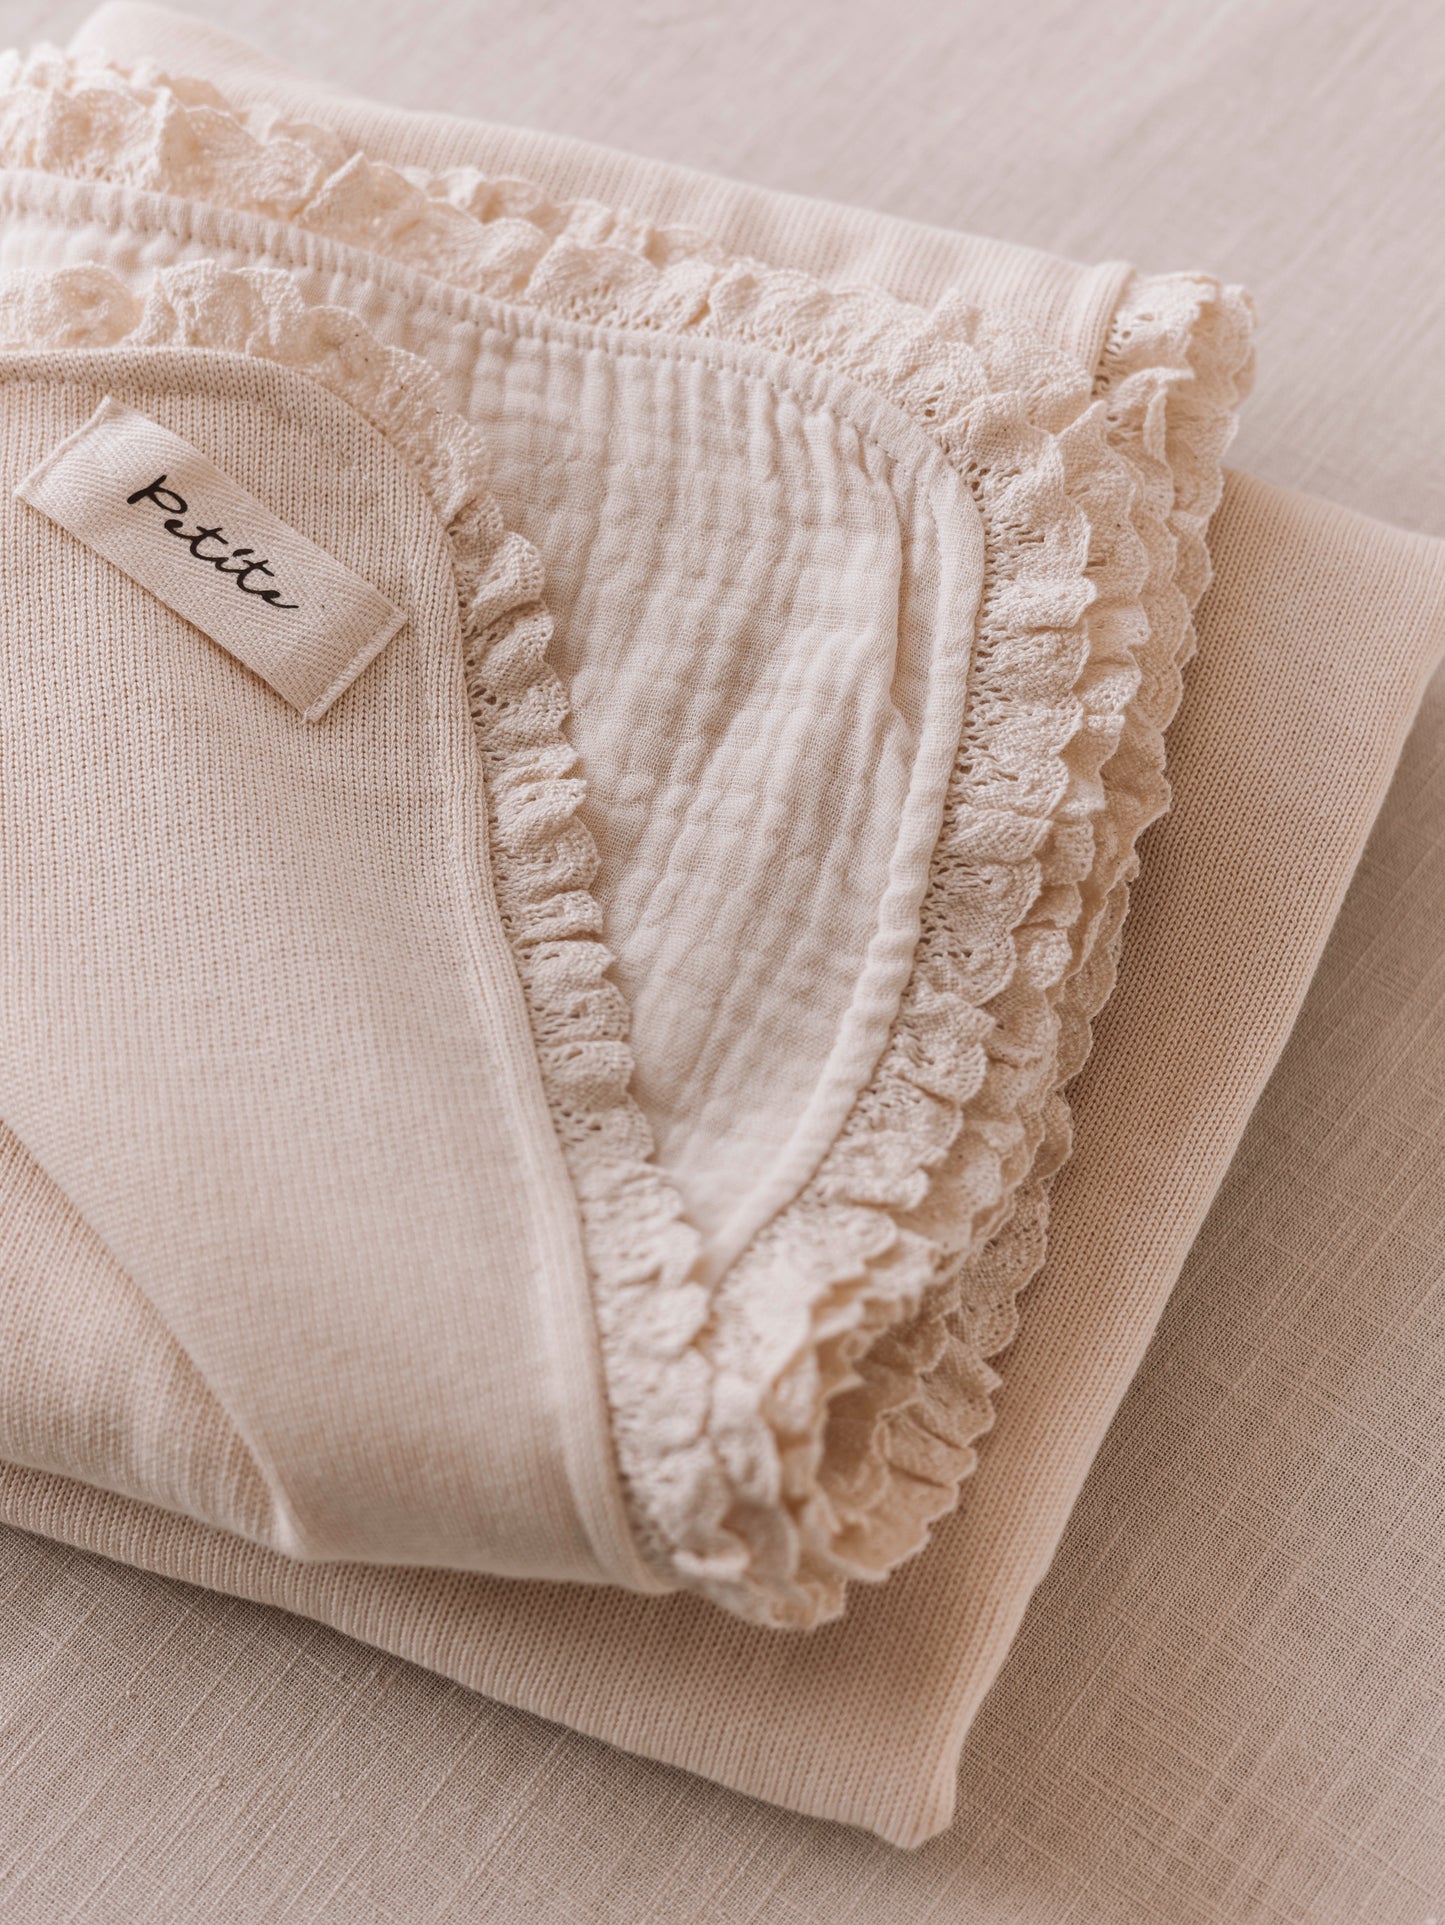 Knit + Muslin Blanket /  buttercream + lace